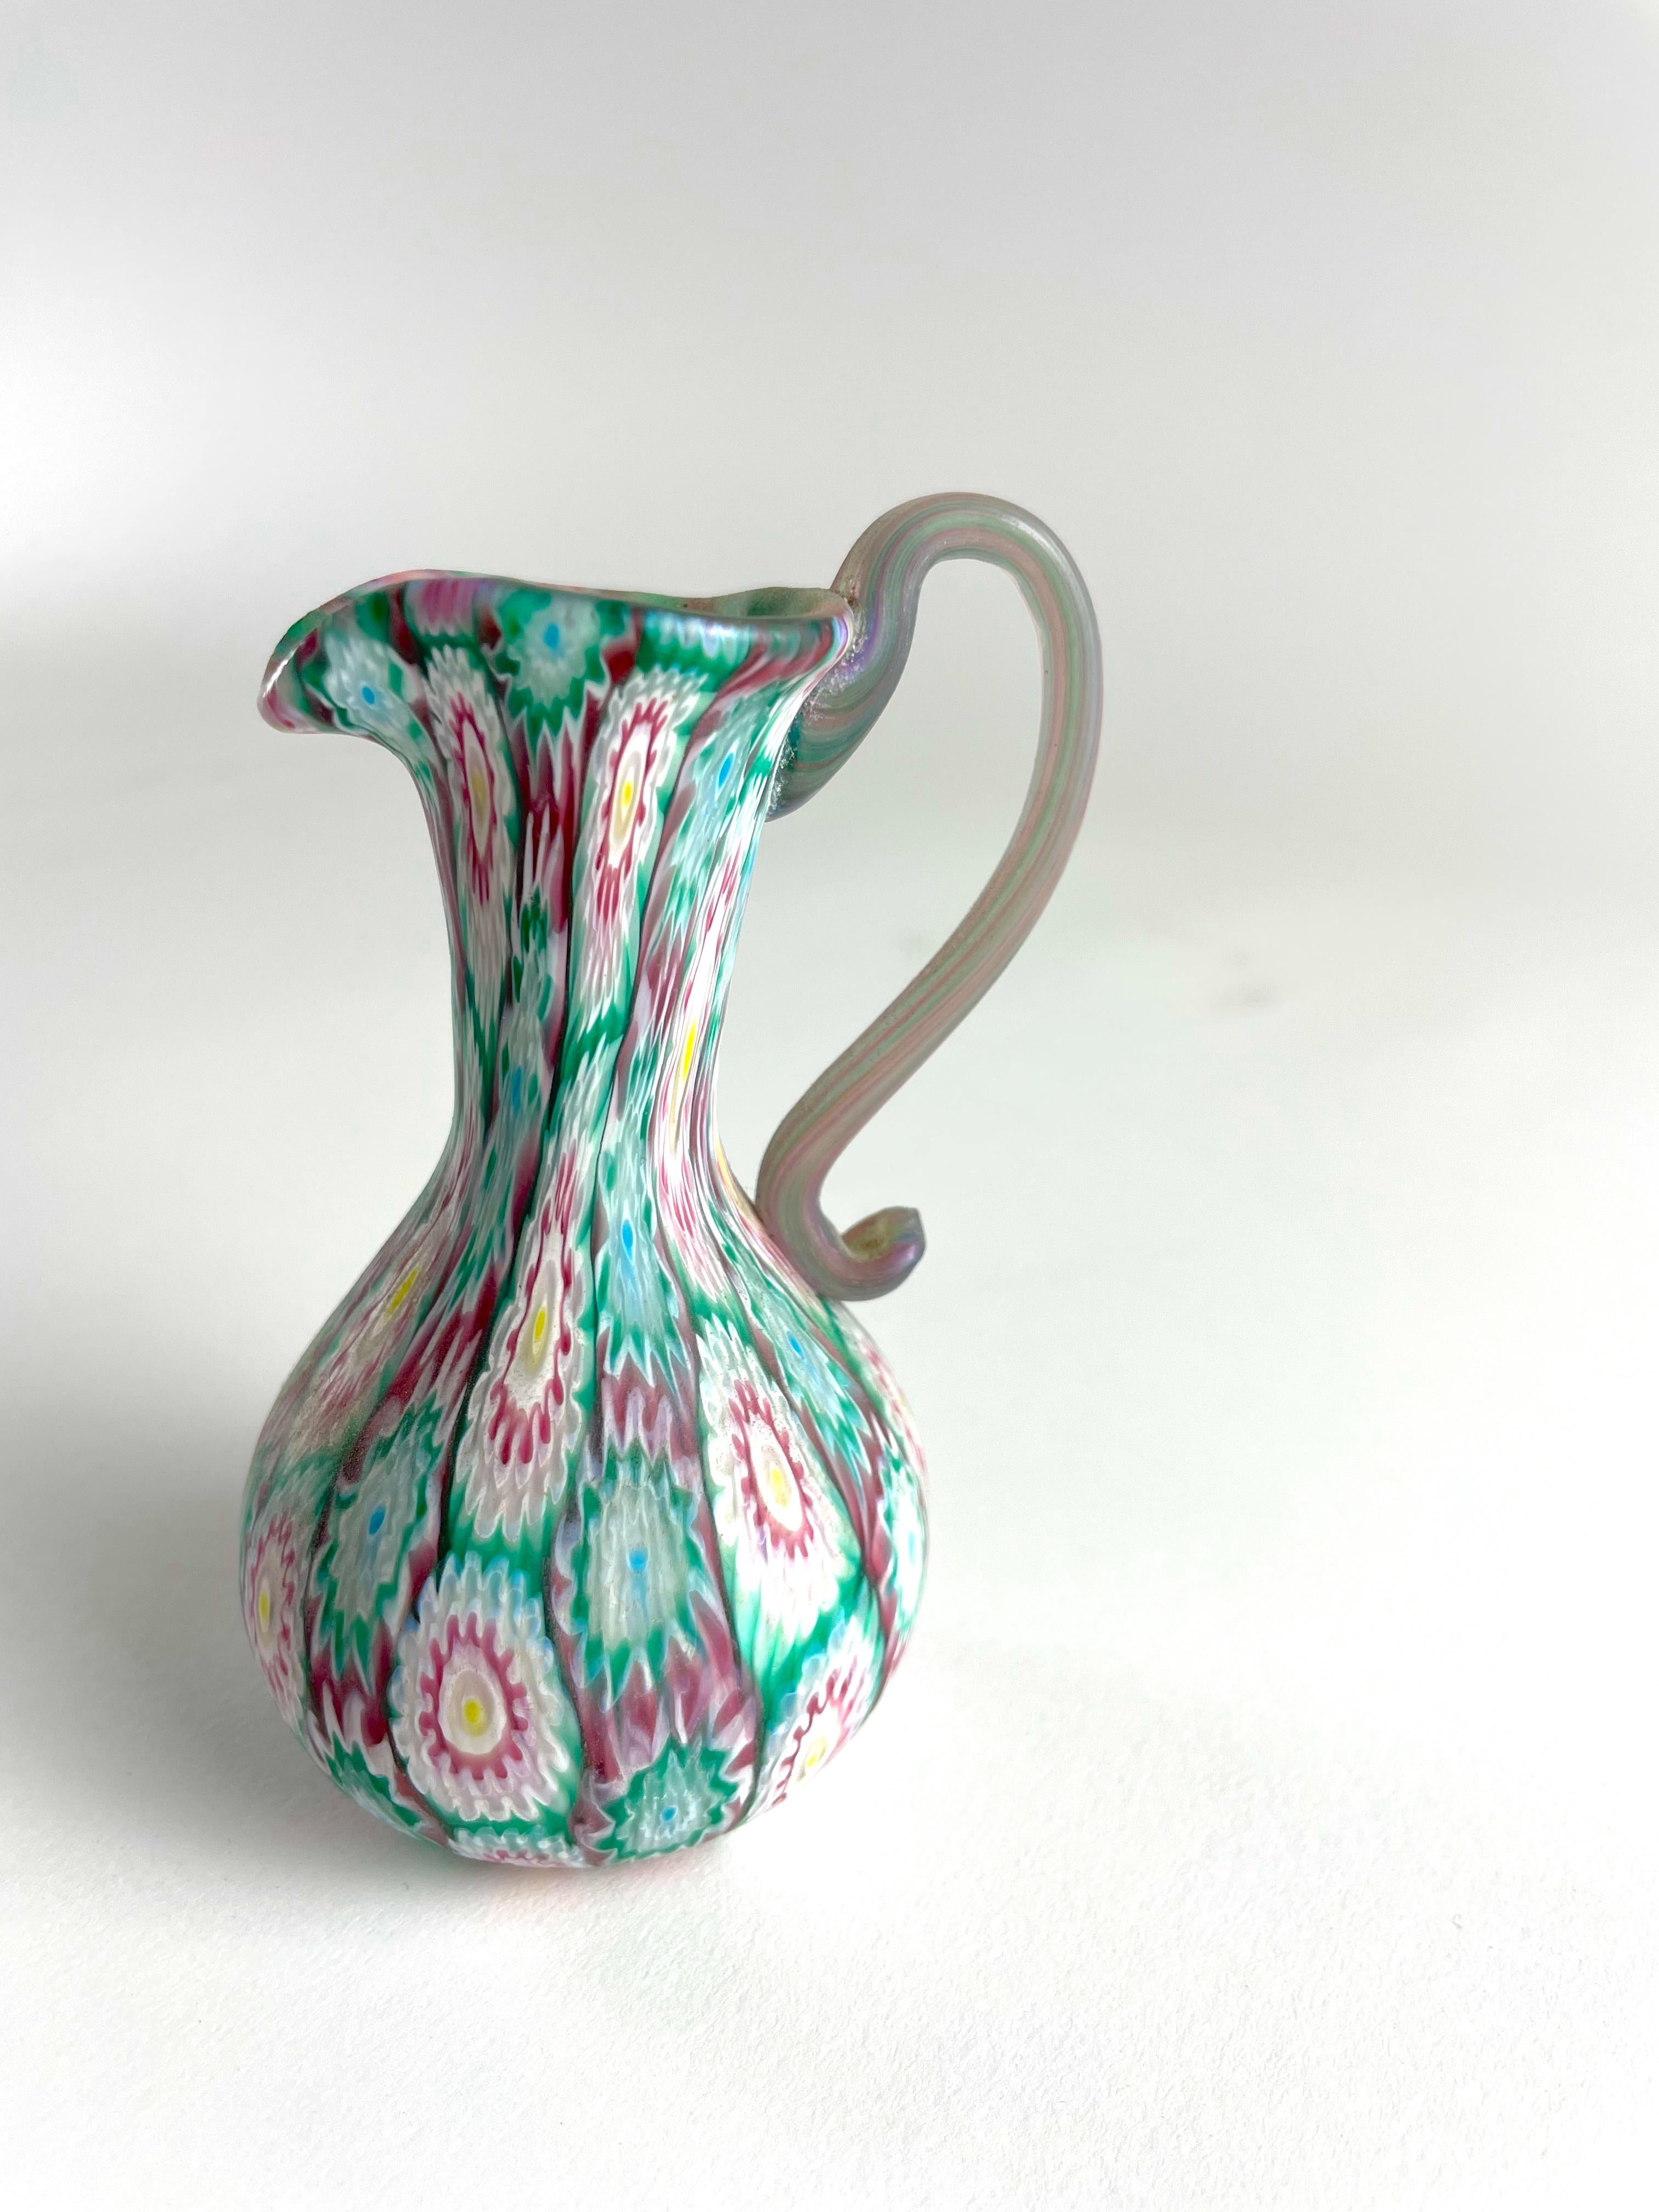 Versetzen Sie sich mit der Vase Millefiori Murrina von Fratelli Toso in die Vergangenheit. Dieses klassische Design stammt aus den 20er Jahren und zeigt die echte Handwerkskunst, die Fratelli Toso berühmt gemacht hat. Jedes Stück wird in